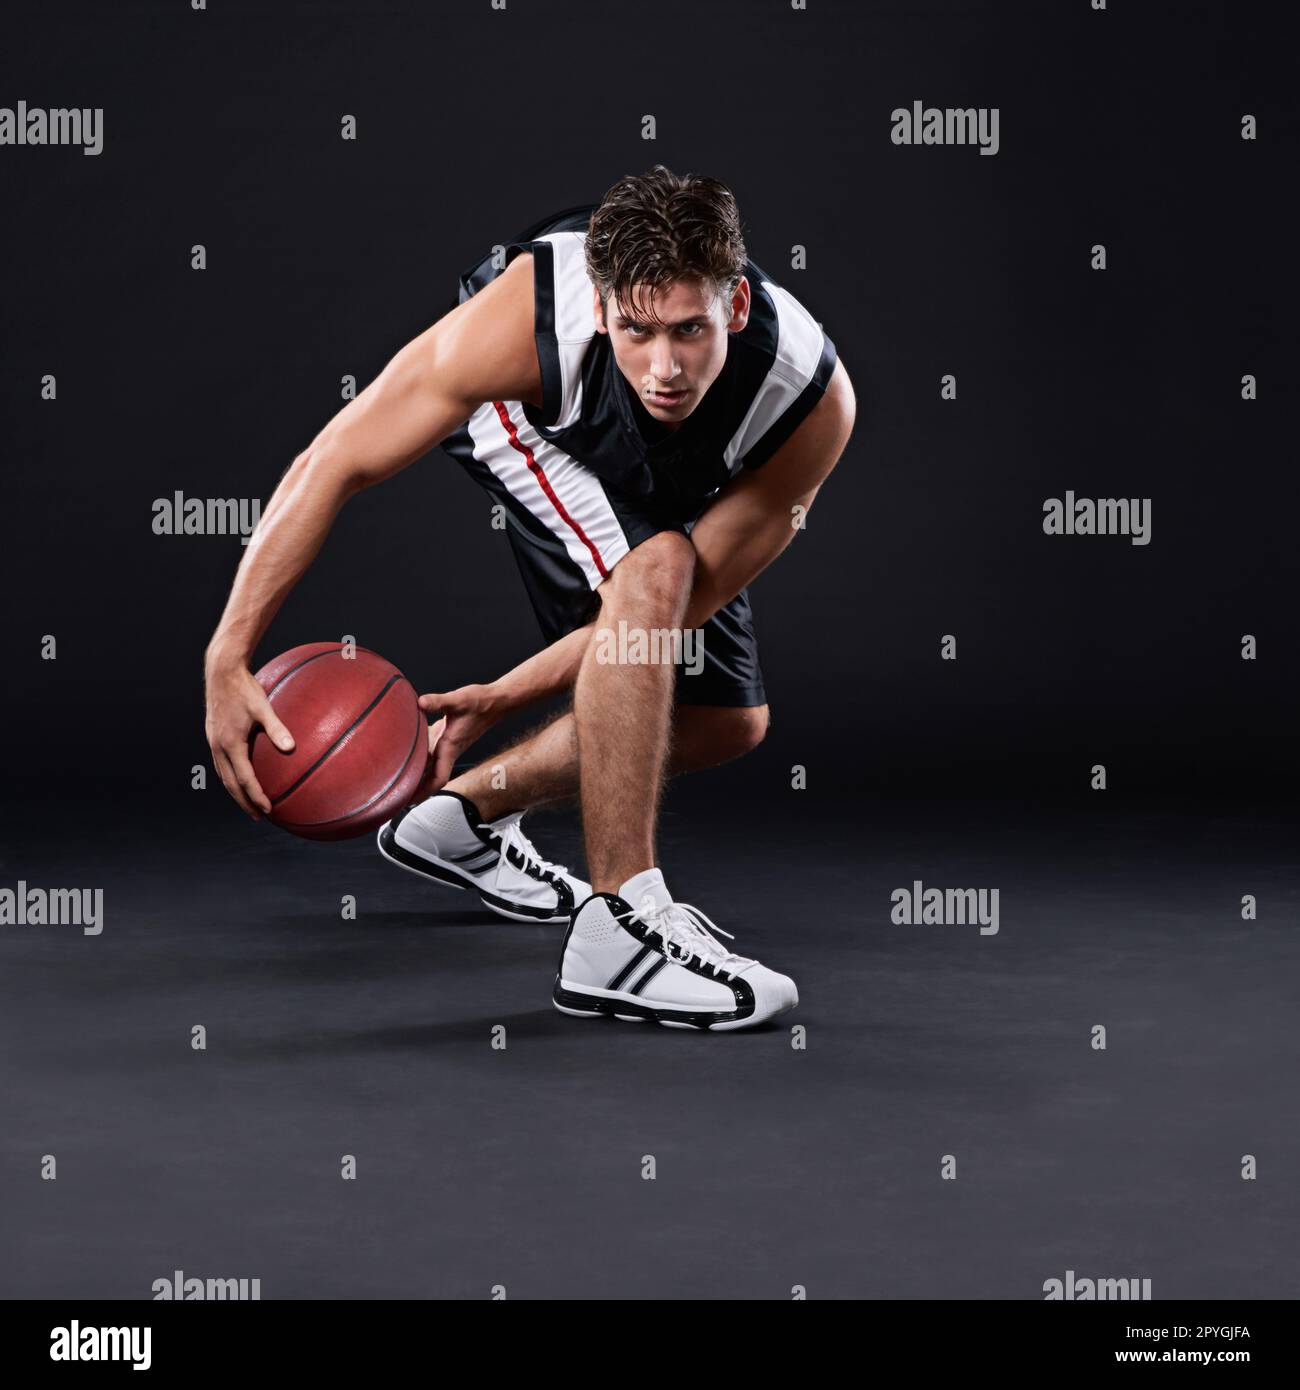 Laufen Sie nicht vor Herausforderungen weg, sondern überfahren Sie sie. Porträt eines männlichen Basketballspielers in Aktion vor schwarzem Hintergrund. Stockfoto